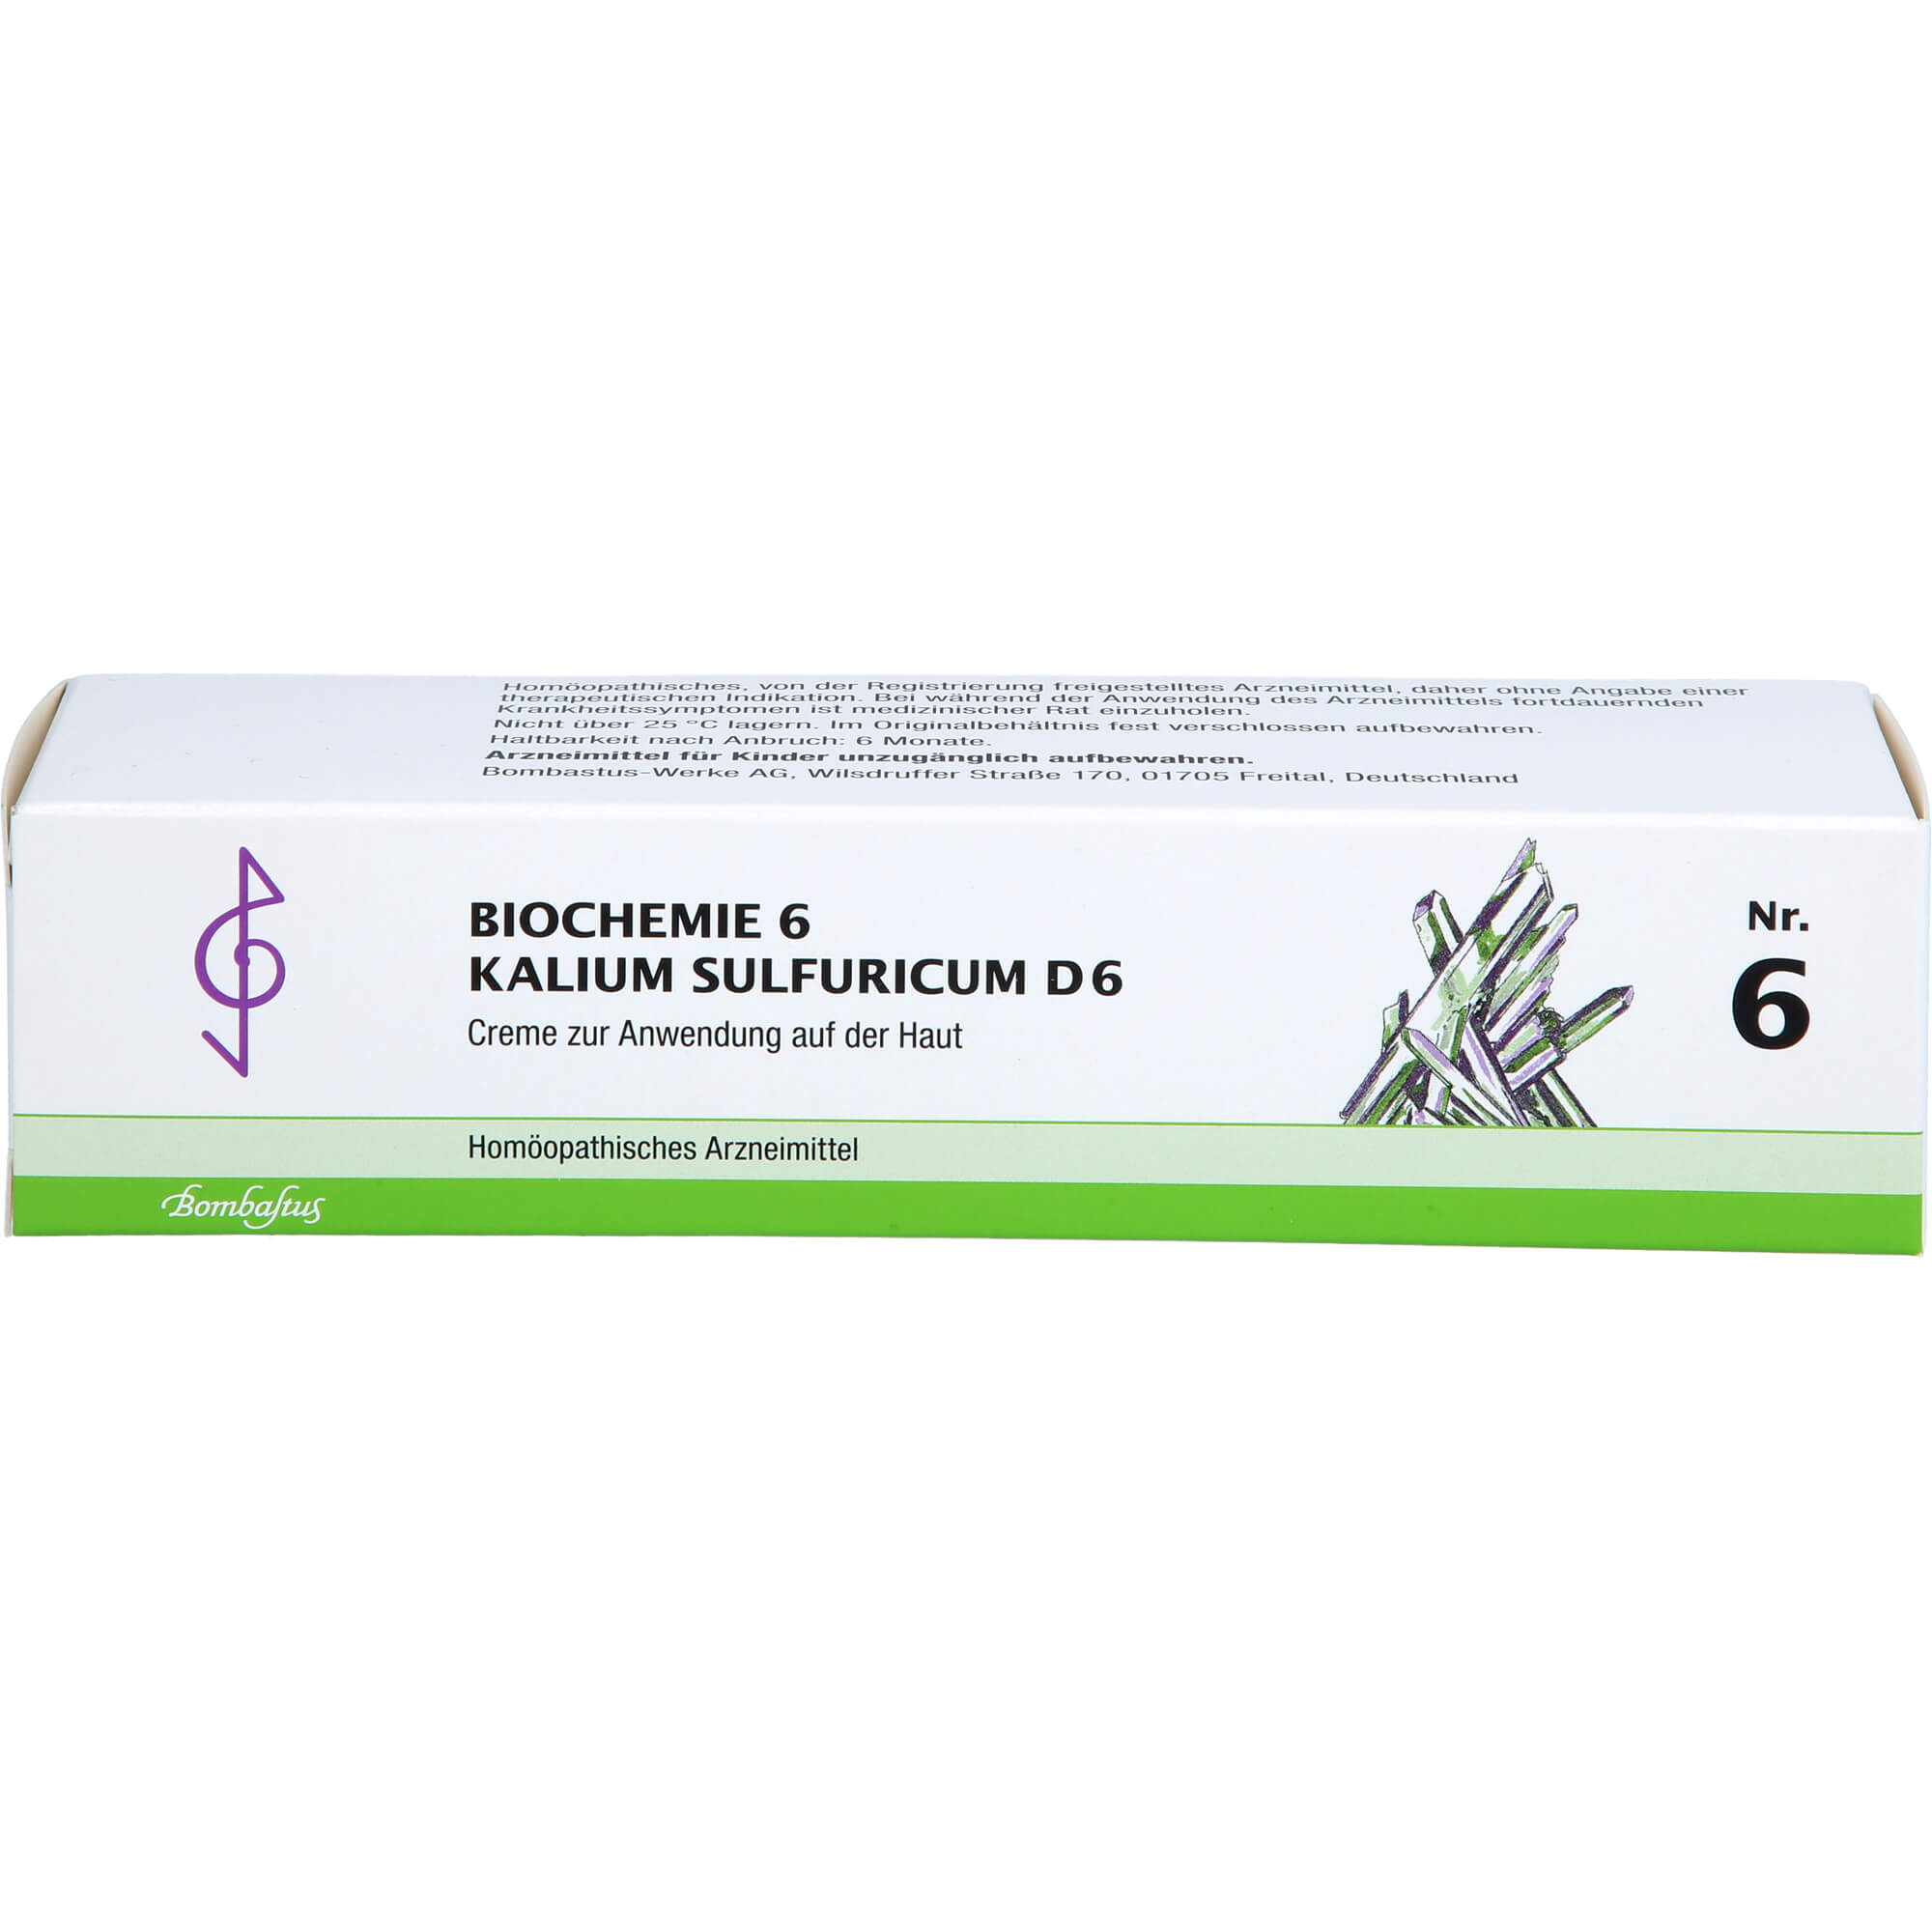 BIOCHEMIE 6 Kalium sulfuricum D 6 Creme